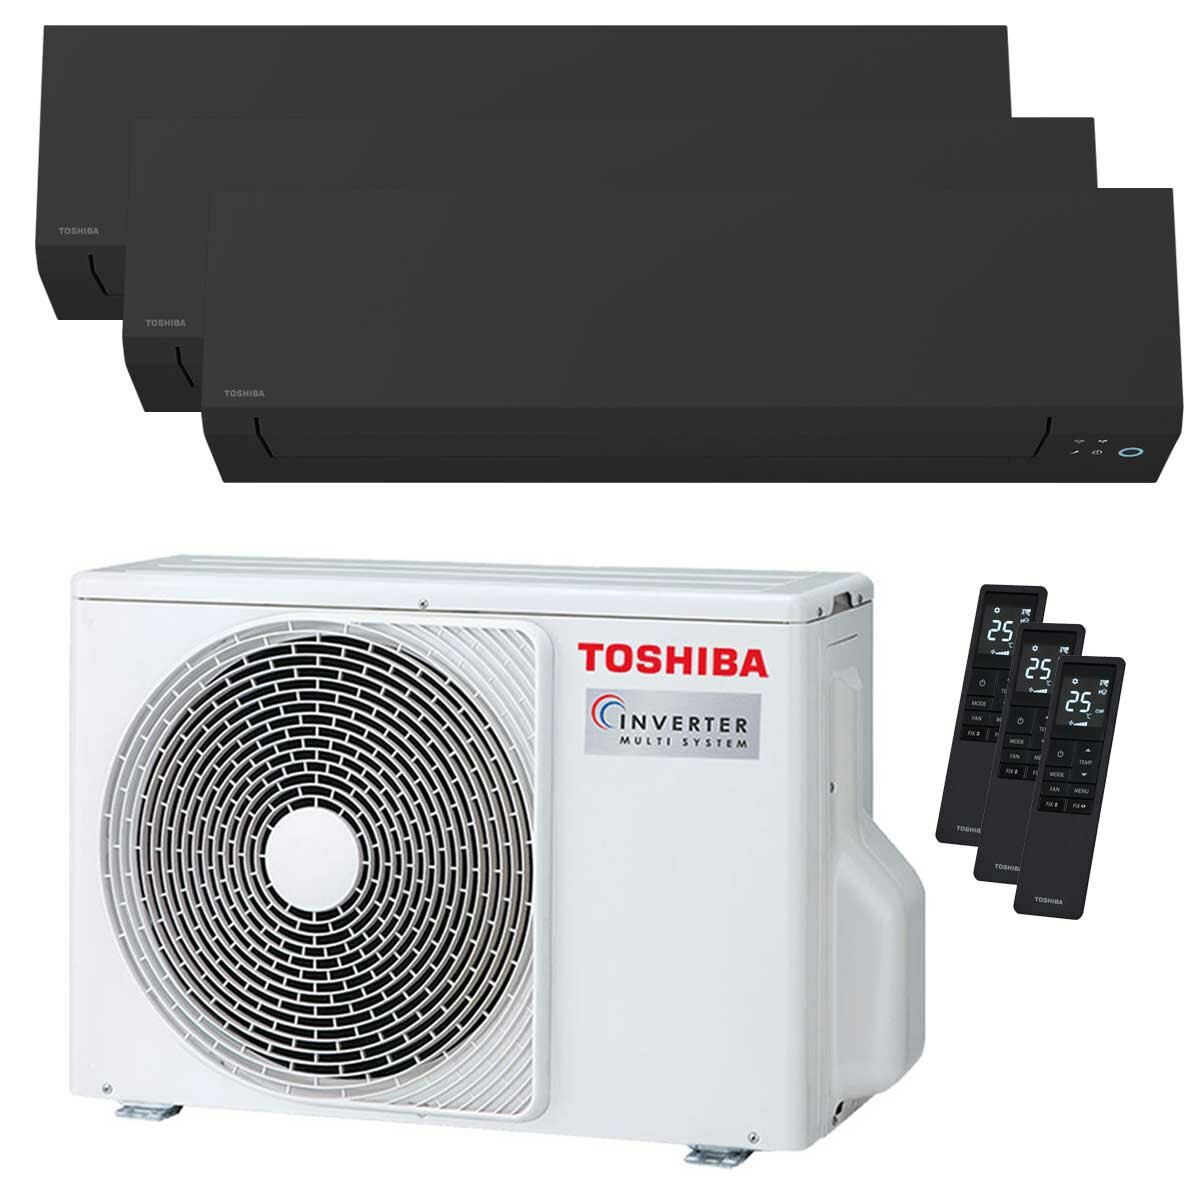 Toshiba SHORAI Edge Black climatiseur trial split 5000+5000+9000 BTU inverseur A++ unité extérieure wifi 5,2 kW 